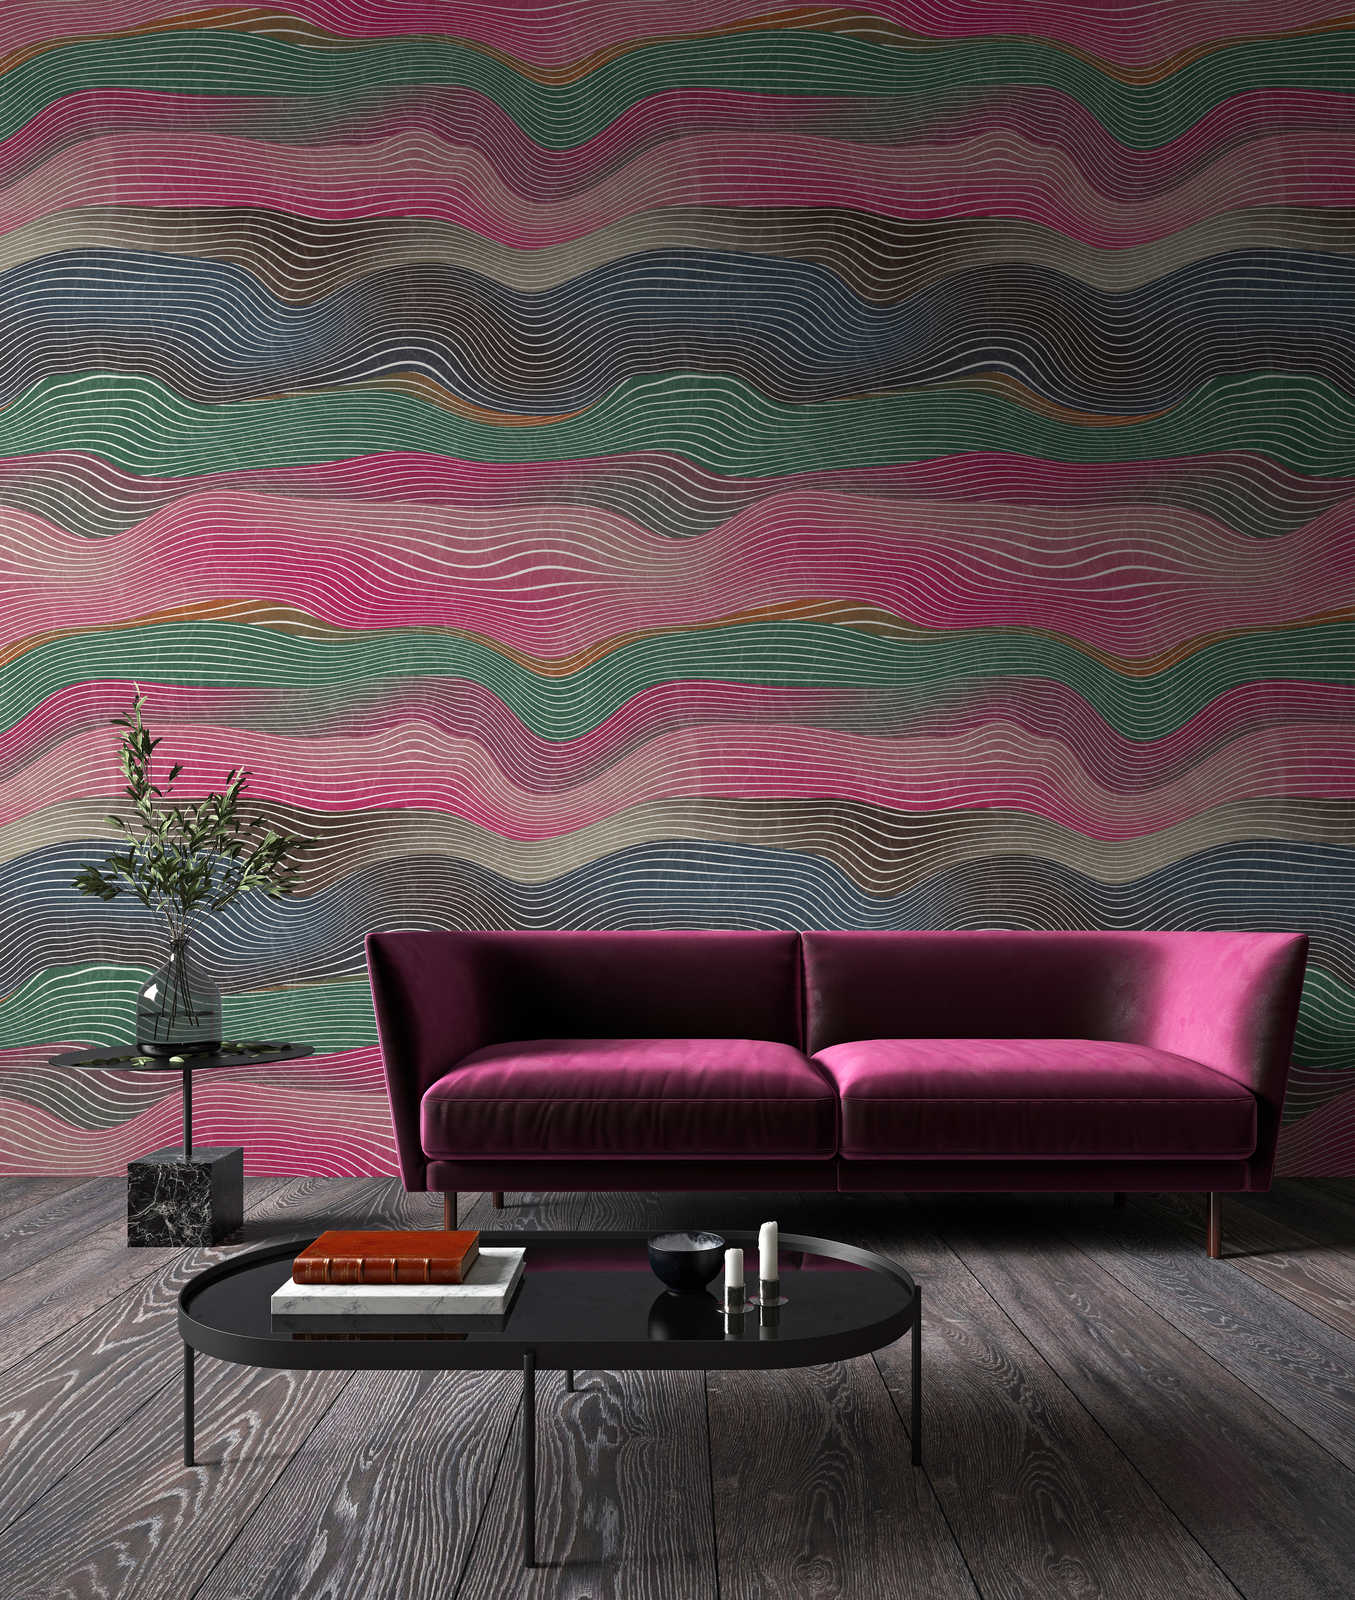             Space 1 – Fototapete Wellen Muster Pink & Grün im Retro Stil
        